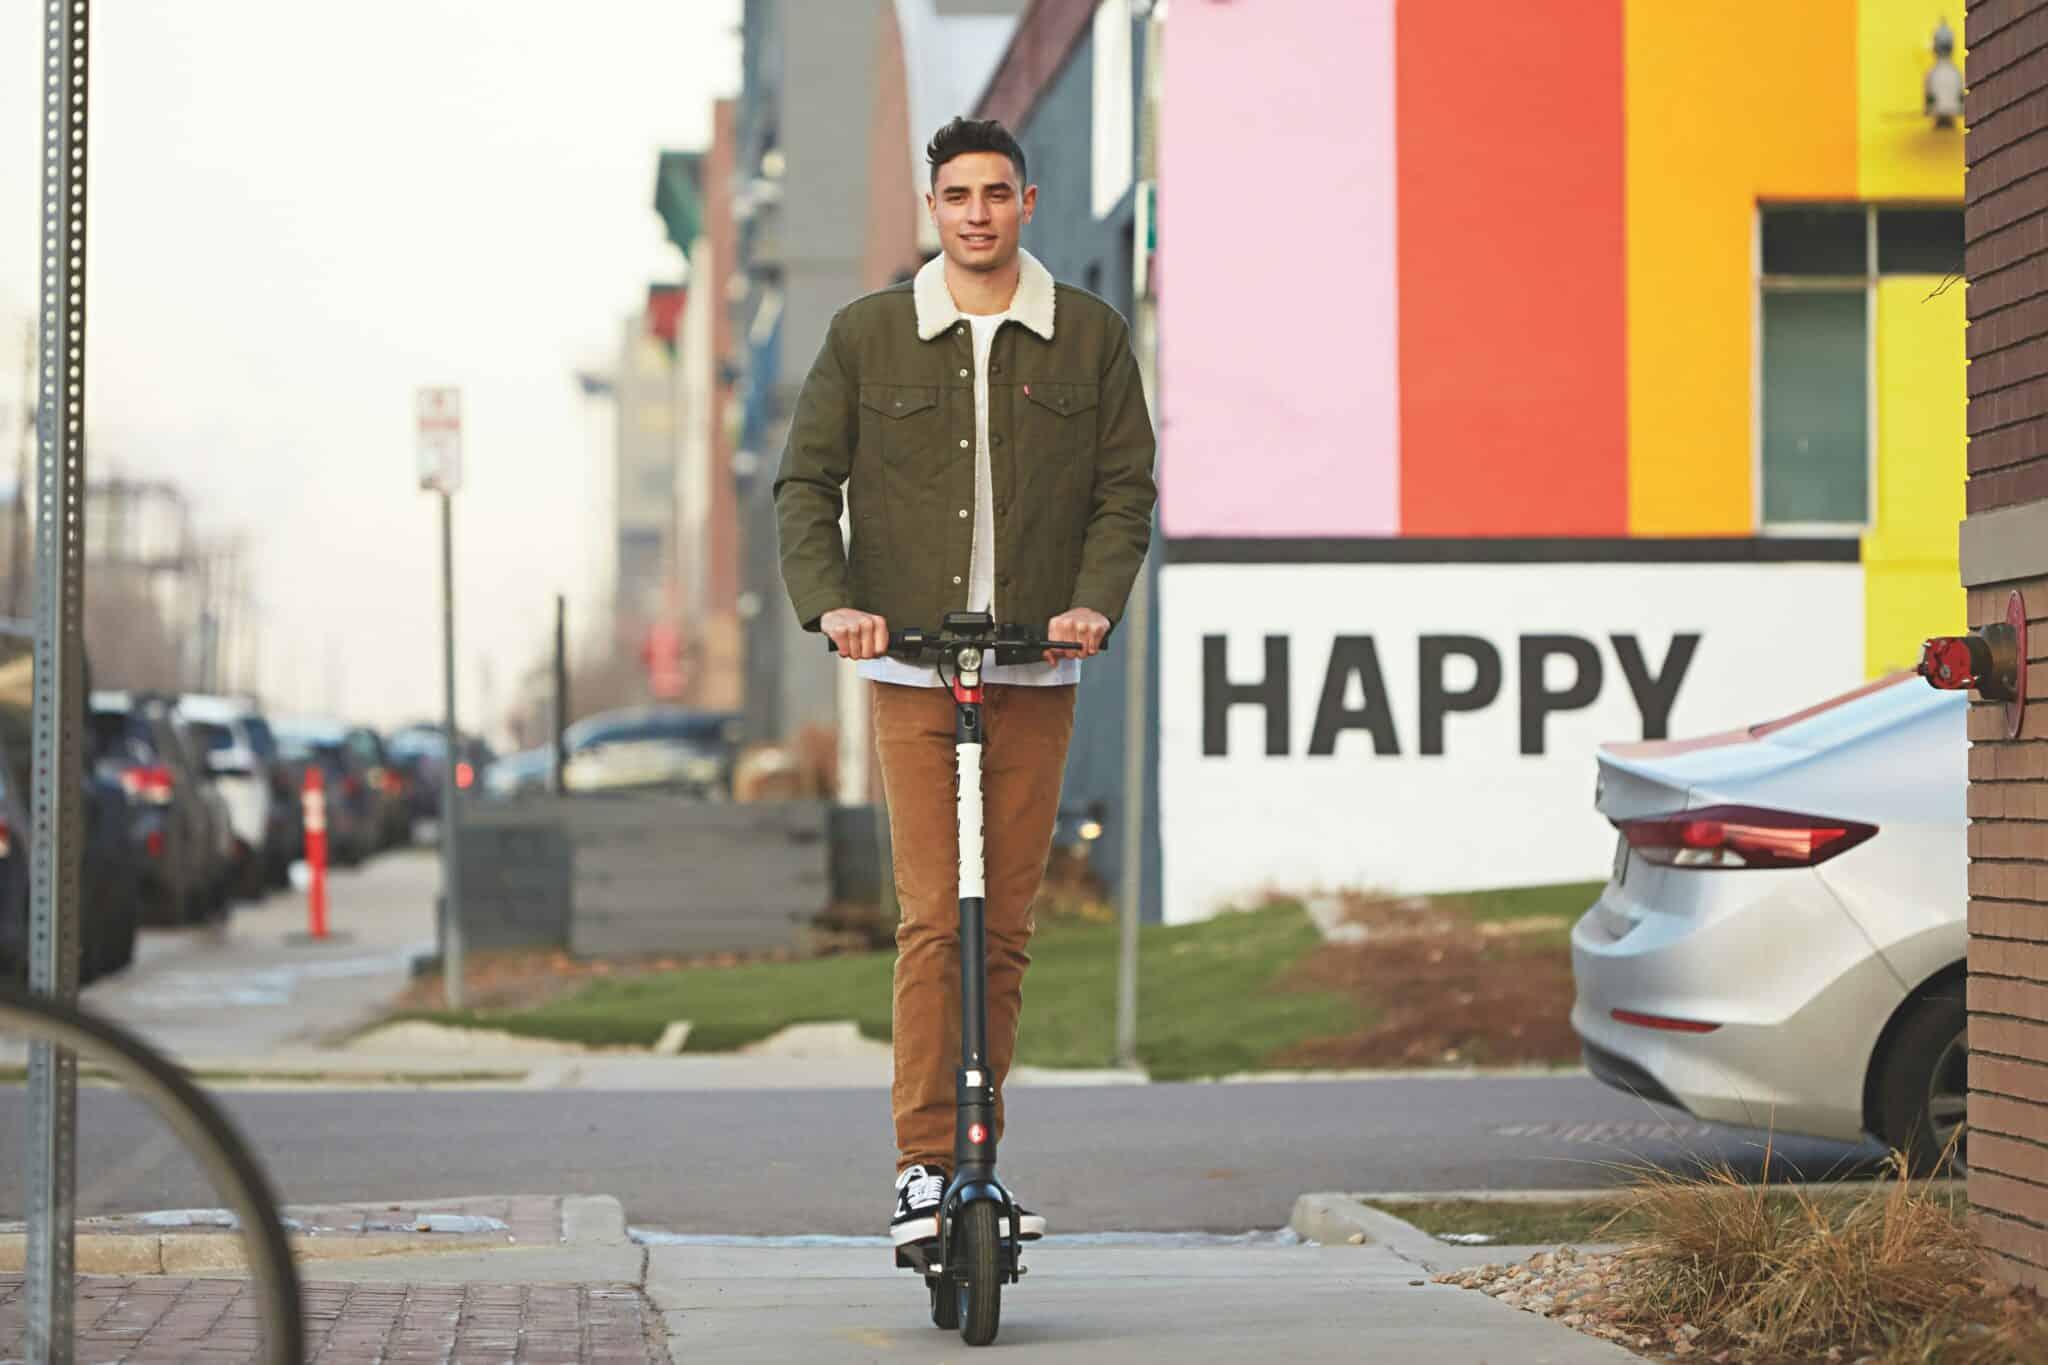 découvrez notre sélection de trottinettes électriques pour une mobilité urbaine écologique et pratique. trouvez votre modèle idéal et parcourez la ville en toute liberté avec un scooter électrique.